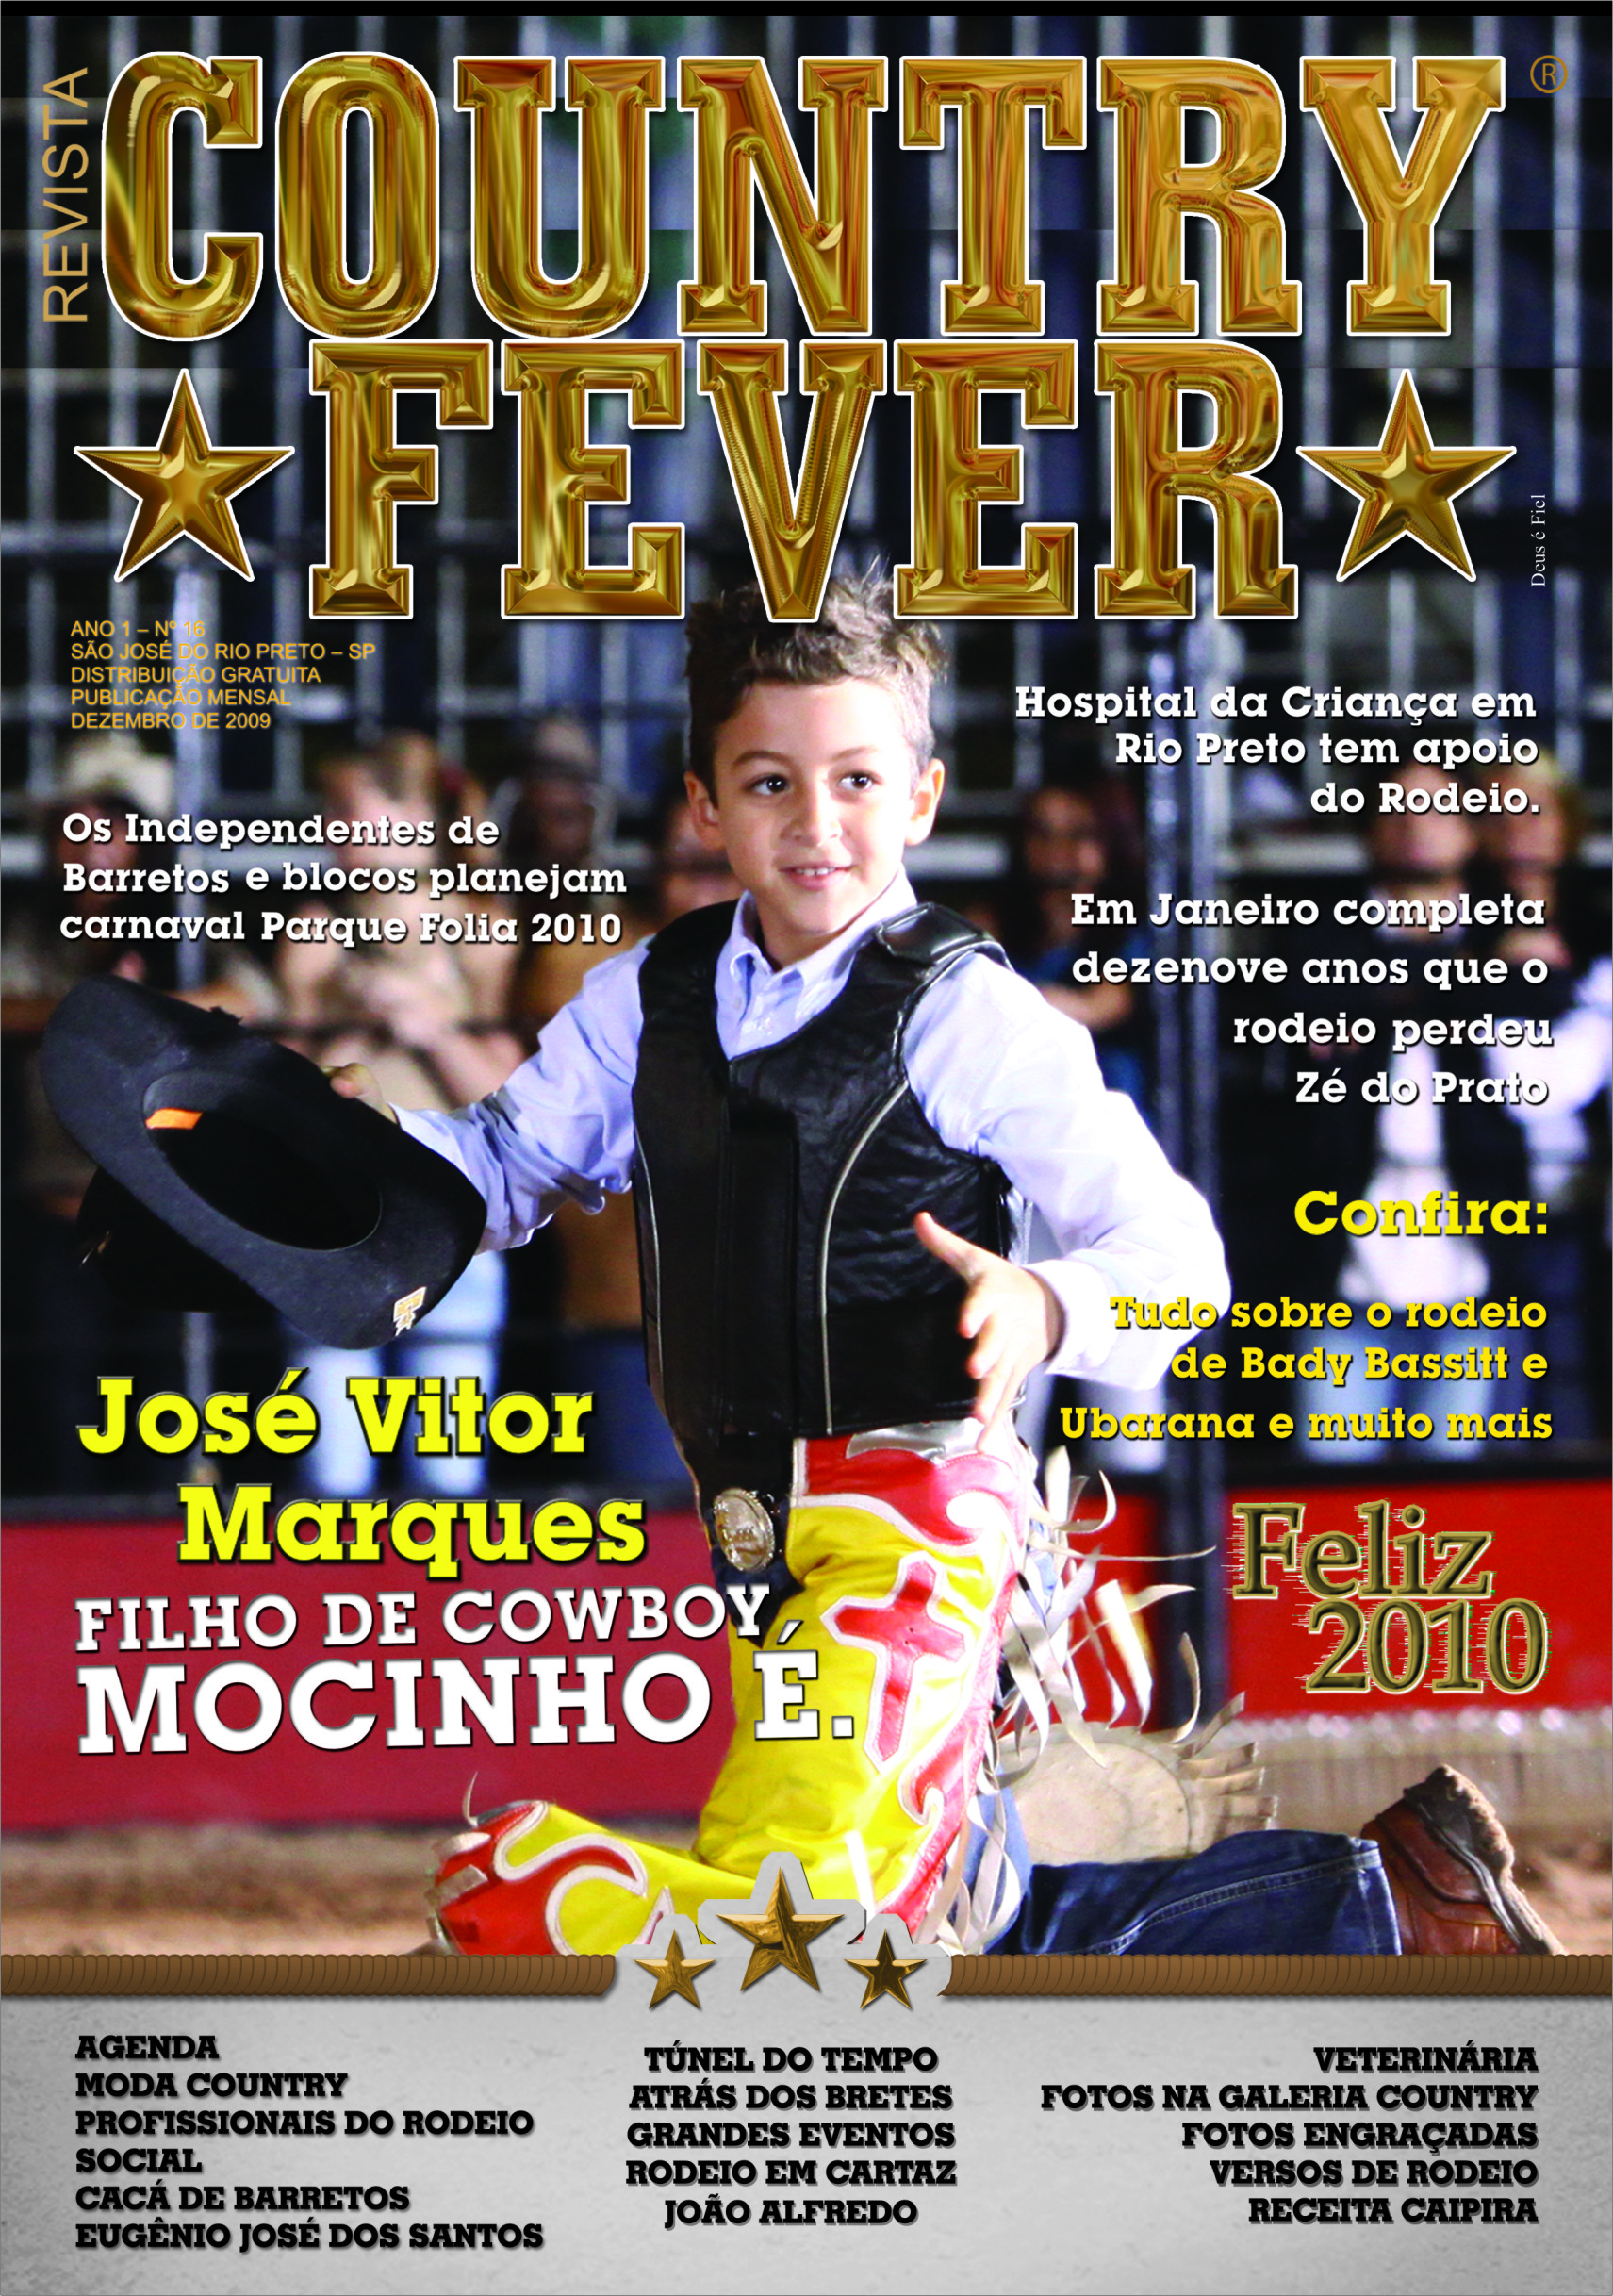 Revista Country Fever - Edição de Dezembro de 2009